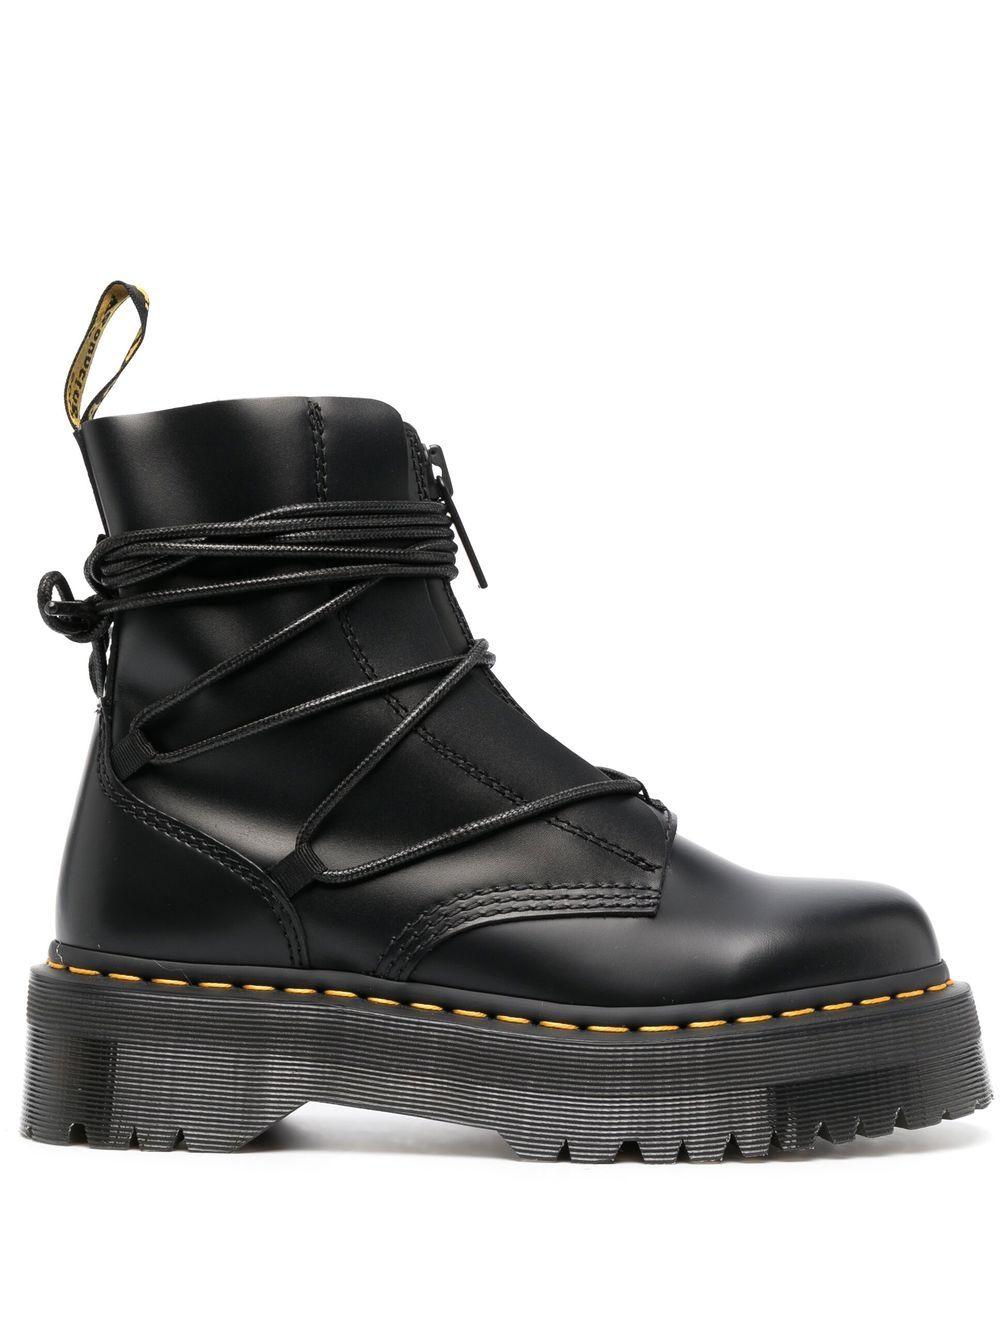 Dr. Martens Jarrick Ii Flatform Leather Boots in Black | Lyst